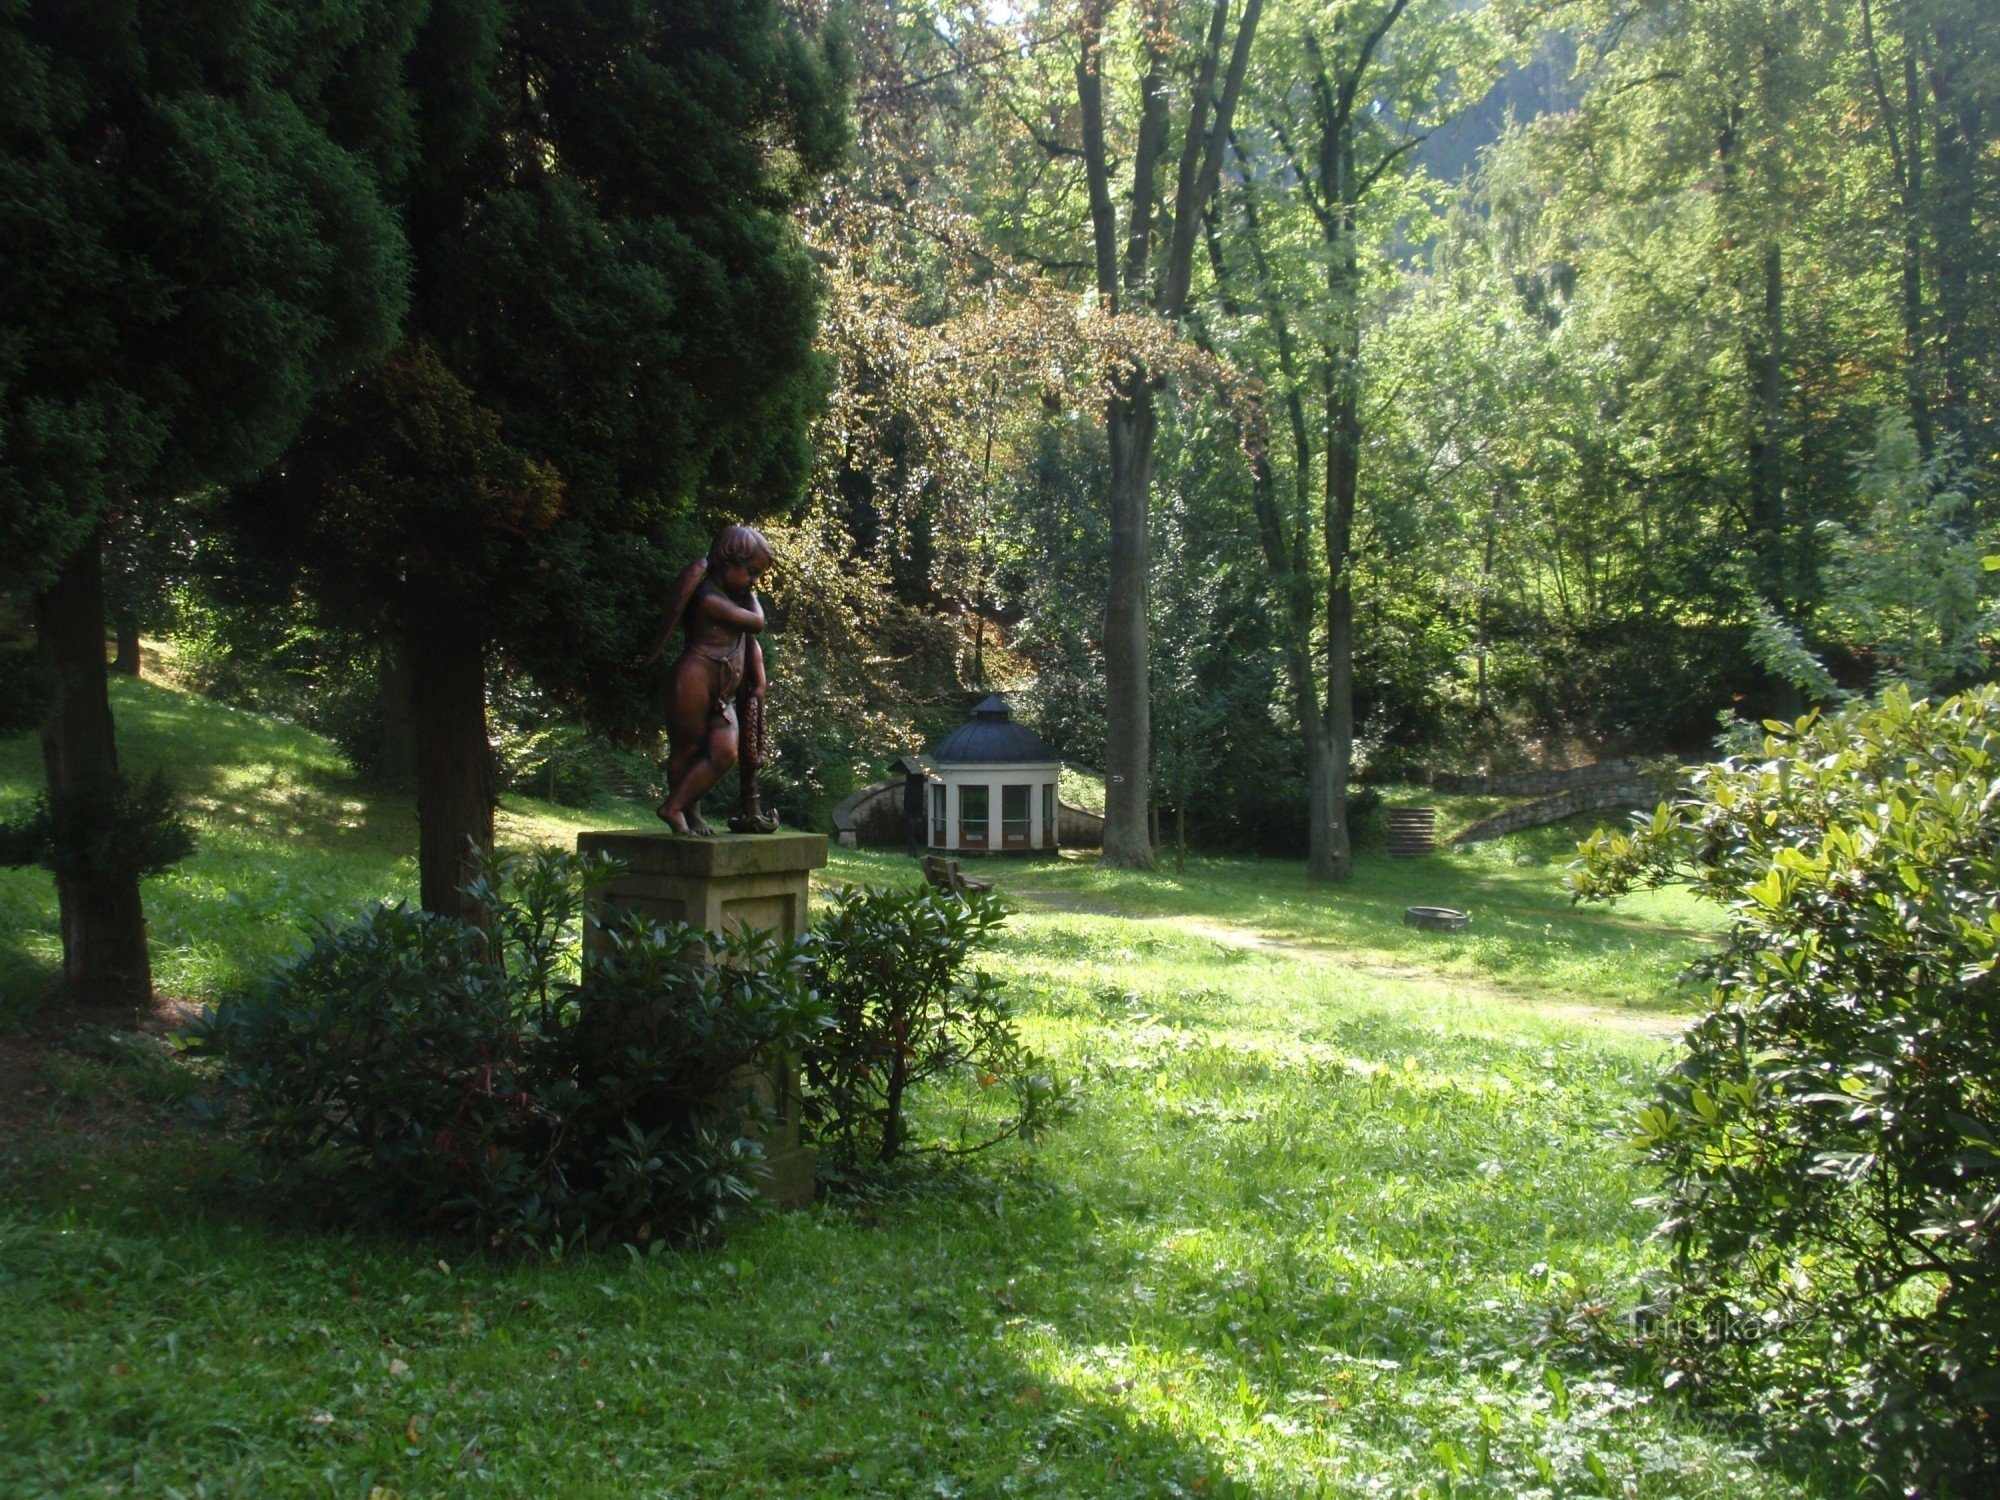 Javorka-park in Česká Třebová